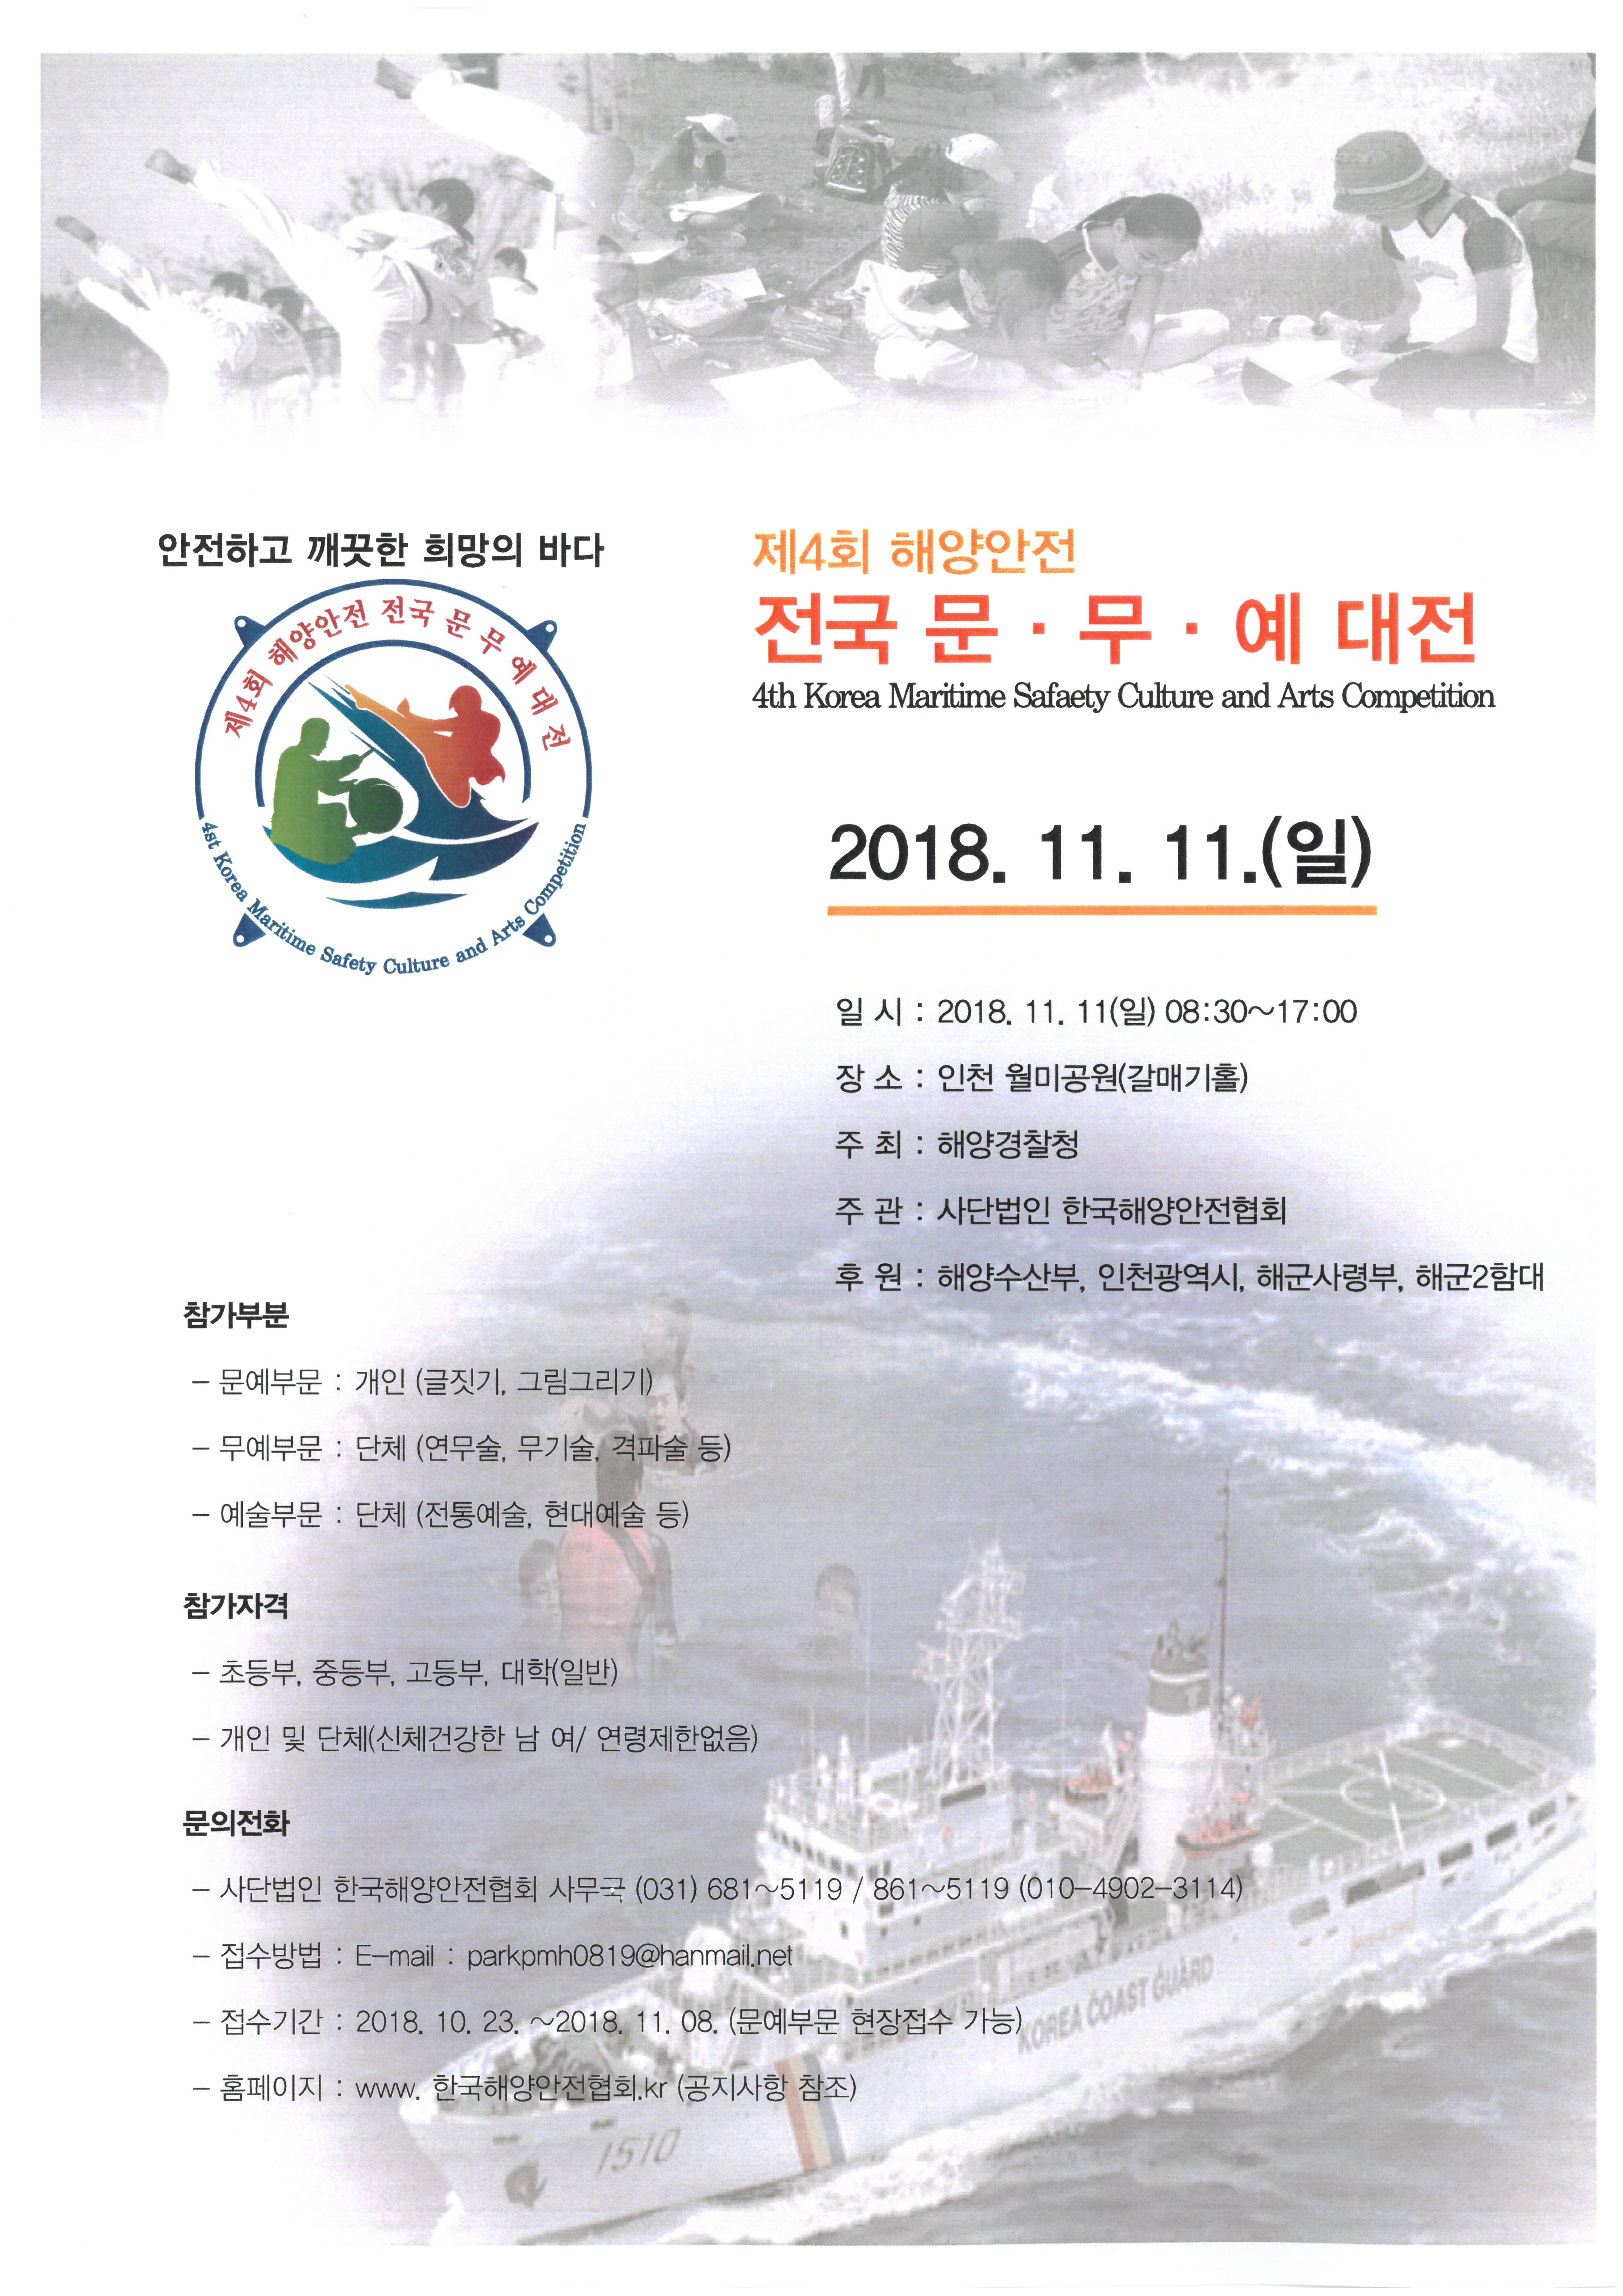 제4회 해양안전 문무예대전 포스터 자세한 사항은 본문의 내용 참조 바랍니다.